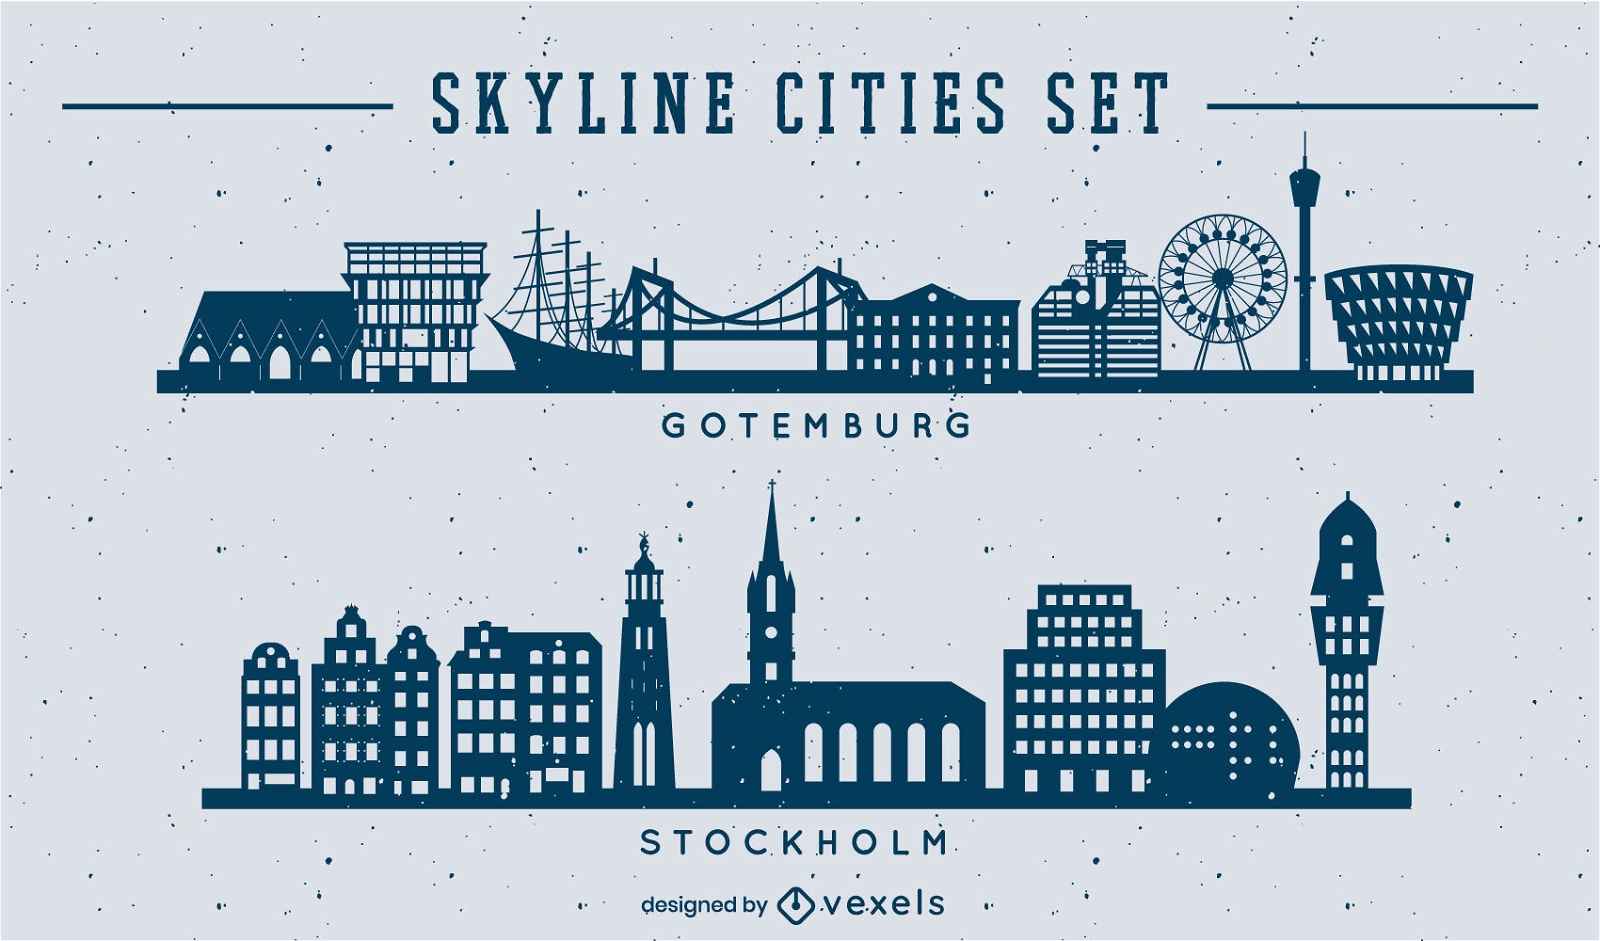 Skyline cities set